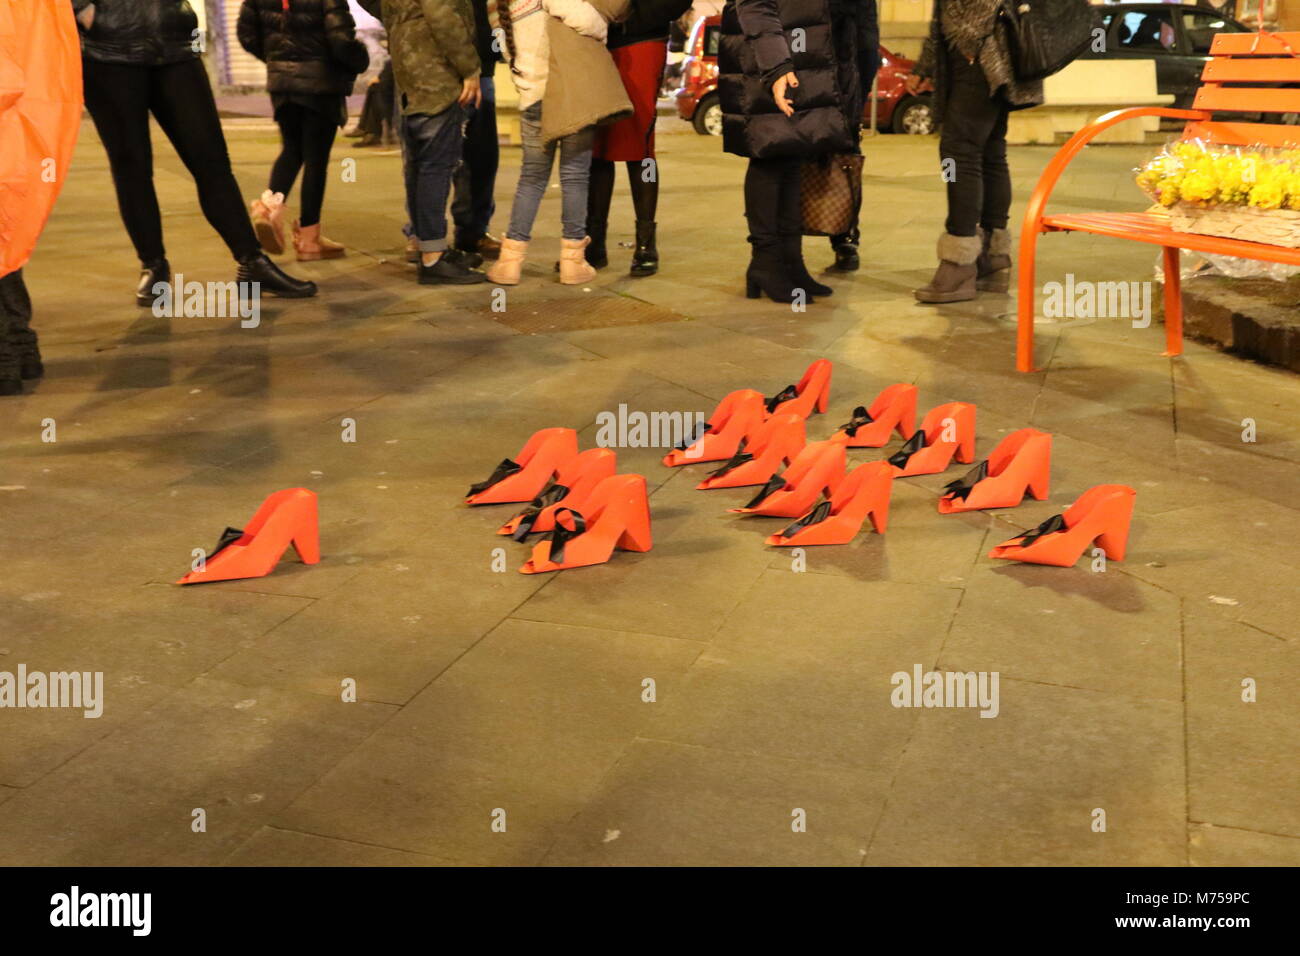 Arzano, Italia. 08 Mar, 2018. El Día Internacional de la mujer en Arzano, en la provincia de Nápoles. la imagen zapatos rojos símbolo de feminidad contra femicidio simboliza las acciones para